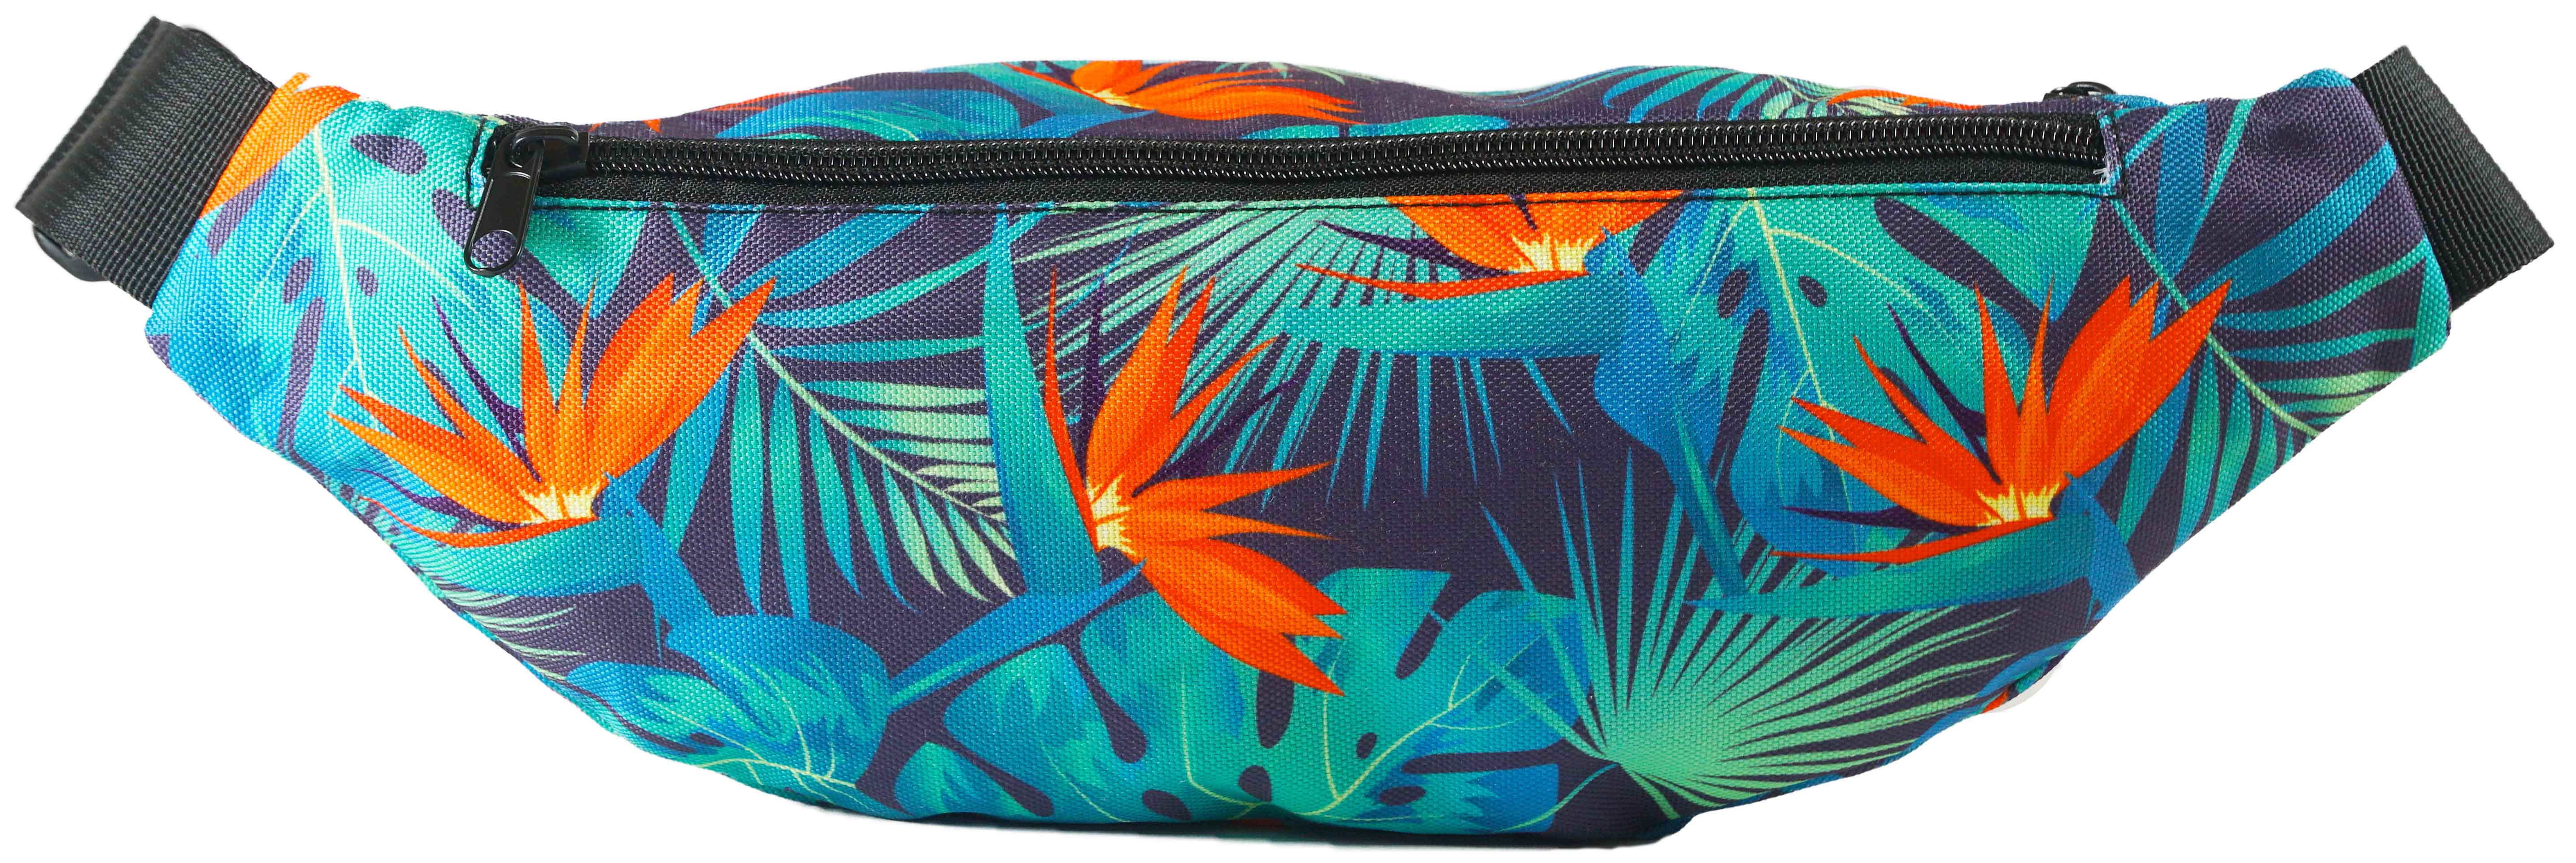 Light Blue Tropical Fanny Pack, Leaf Print Designer Fanny Pack Waist Belt  Festival Bag- Made in USA